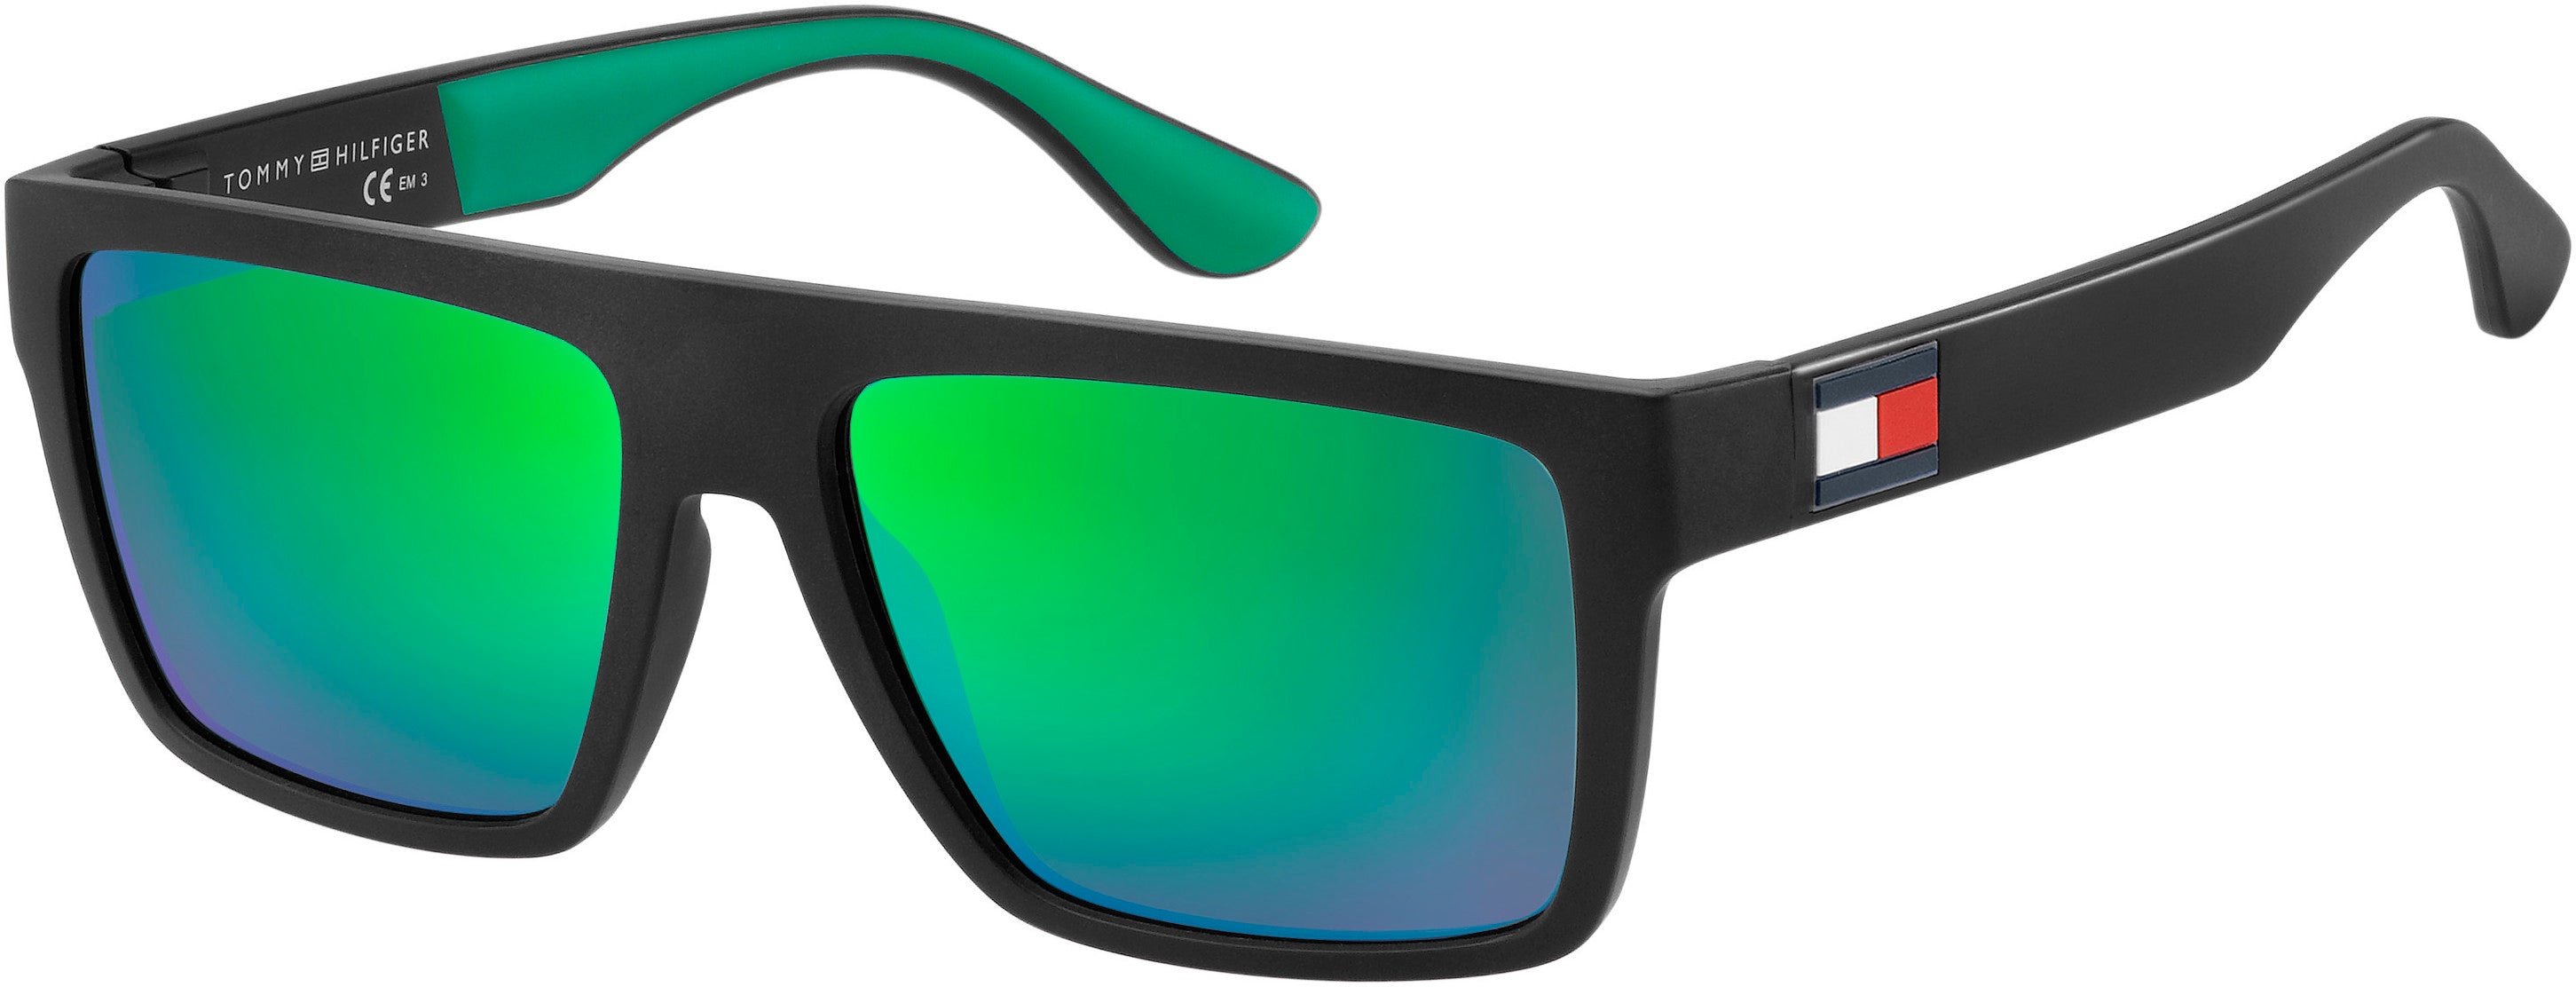 Tommy Hilfiger T. Hilfiger 1605/S Rectangular Sunglasses 03OL-03OL  Bkall Green (Z9 Green Multi Pz)